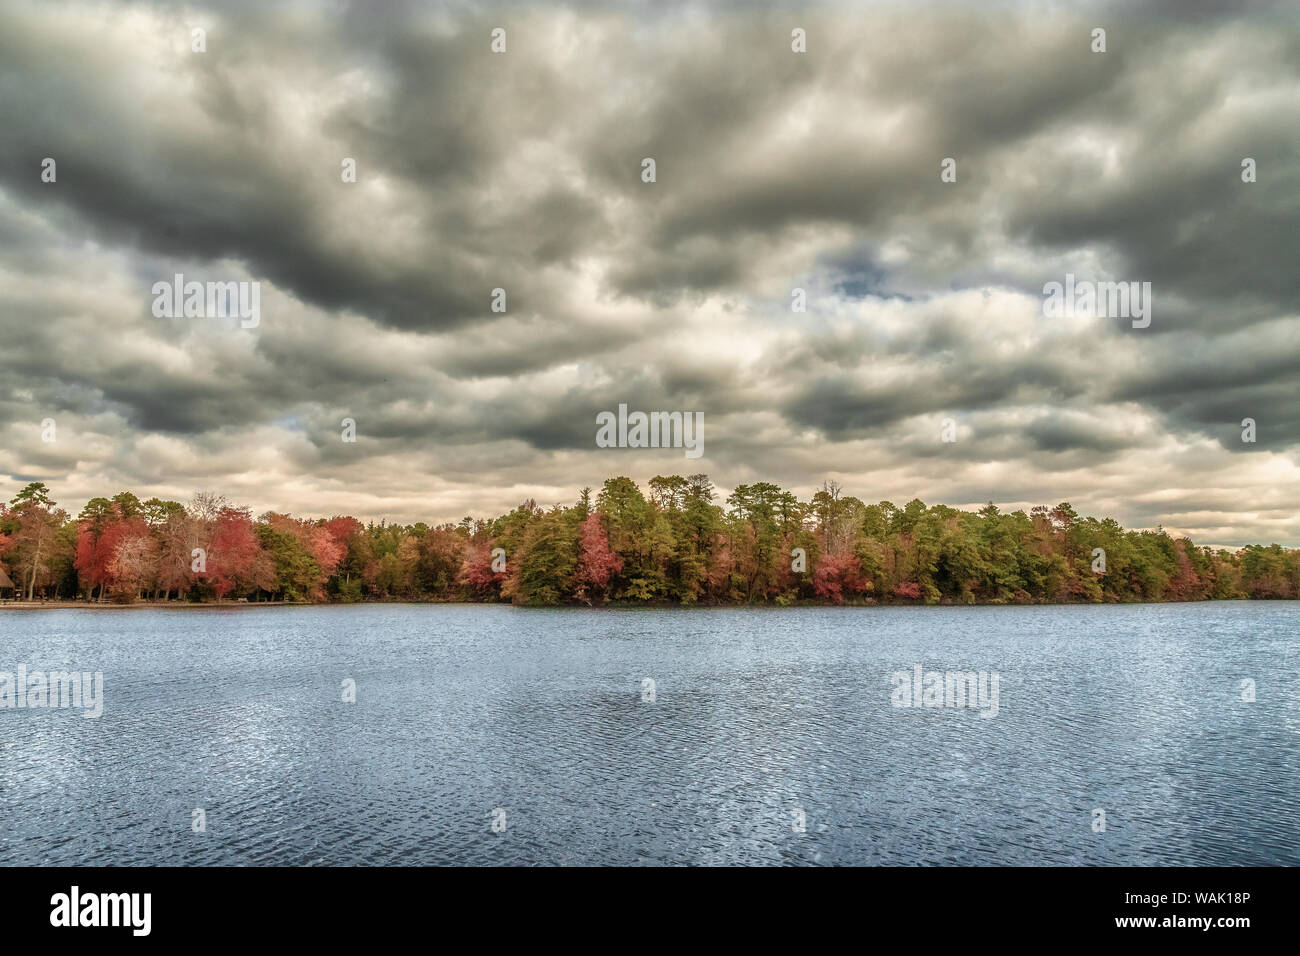 USA, New Jersey, belleplain State Forest. Gewitterwolken über den See und den Wald. Credit: Jay O'Brien/Jaynes Galerie/DanitaDelimont.com Stockfoto